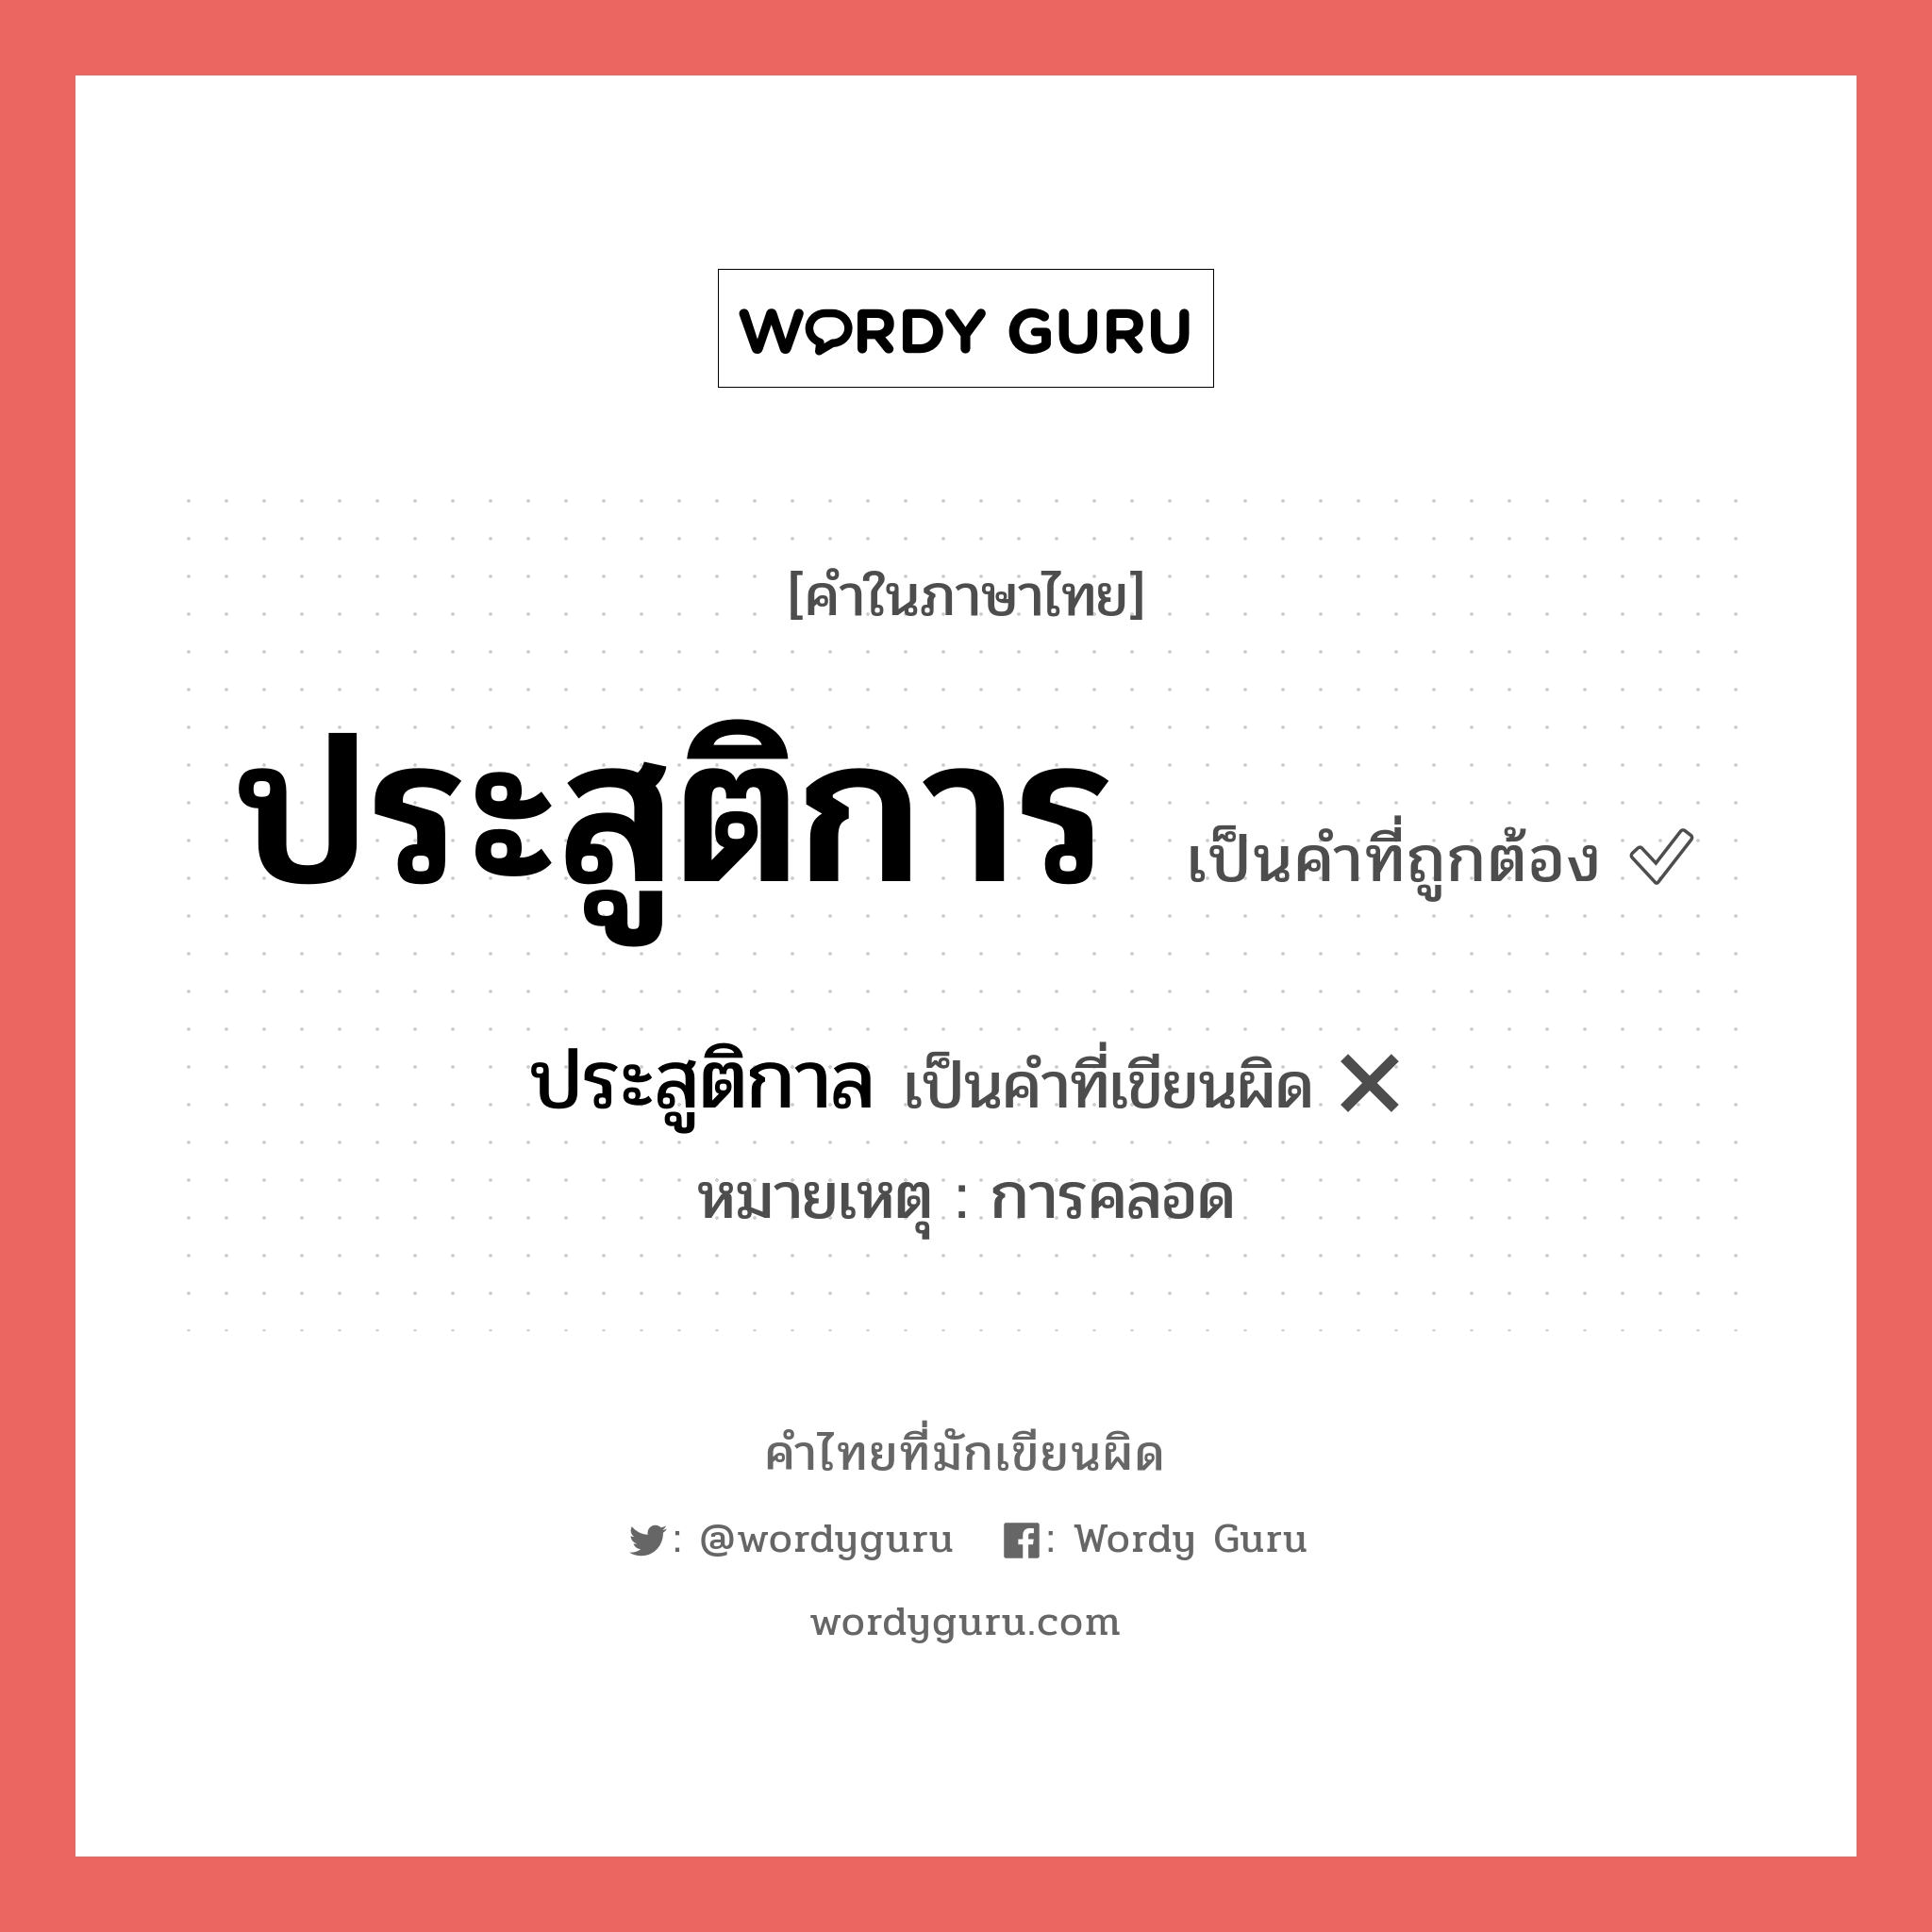 ประสูติกาล หรือ ประสูติการ คำไหนเขียนถูก?, คำในภาษาไทยที่มักเขียนผิด ประสูติการ คำที่ผิด ❌ ประสูติกาล หมายเหตุ การคลอด